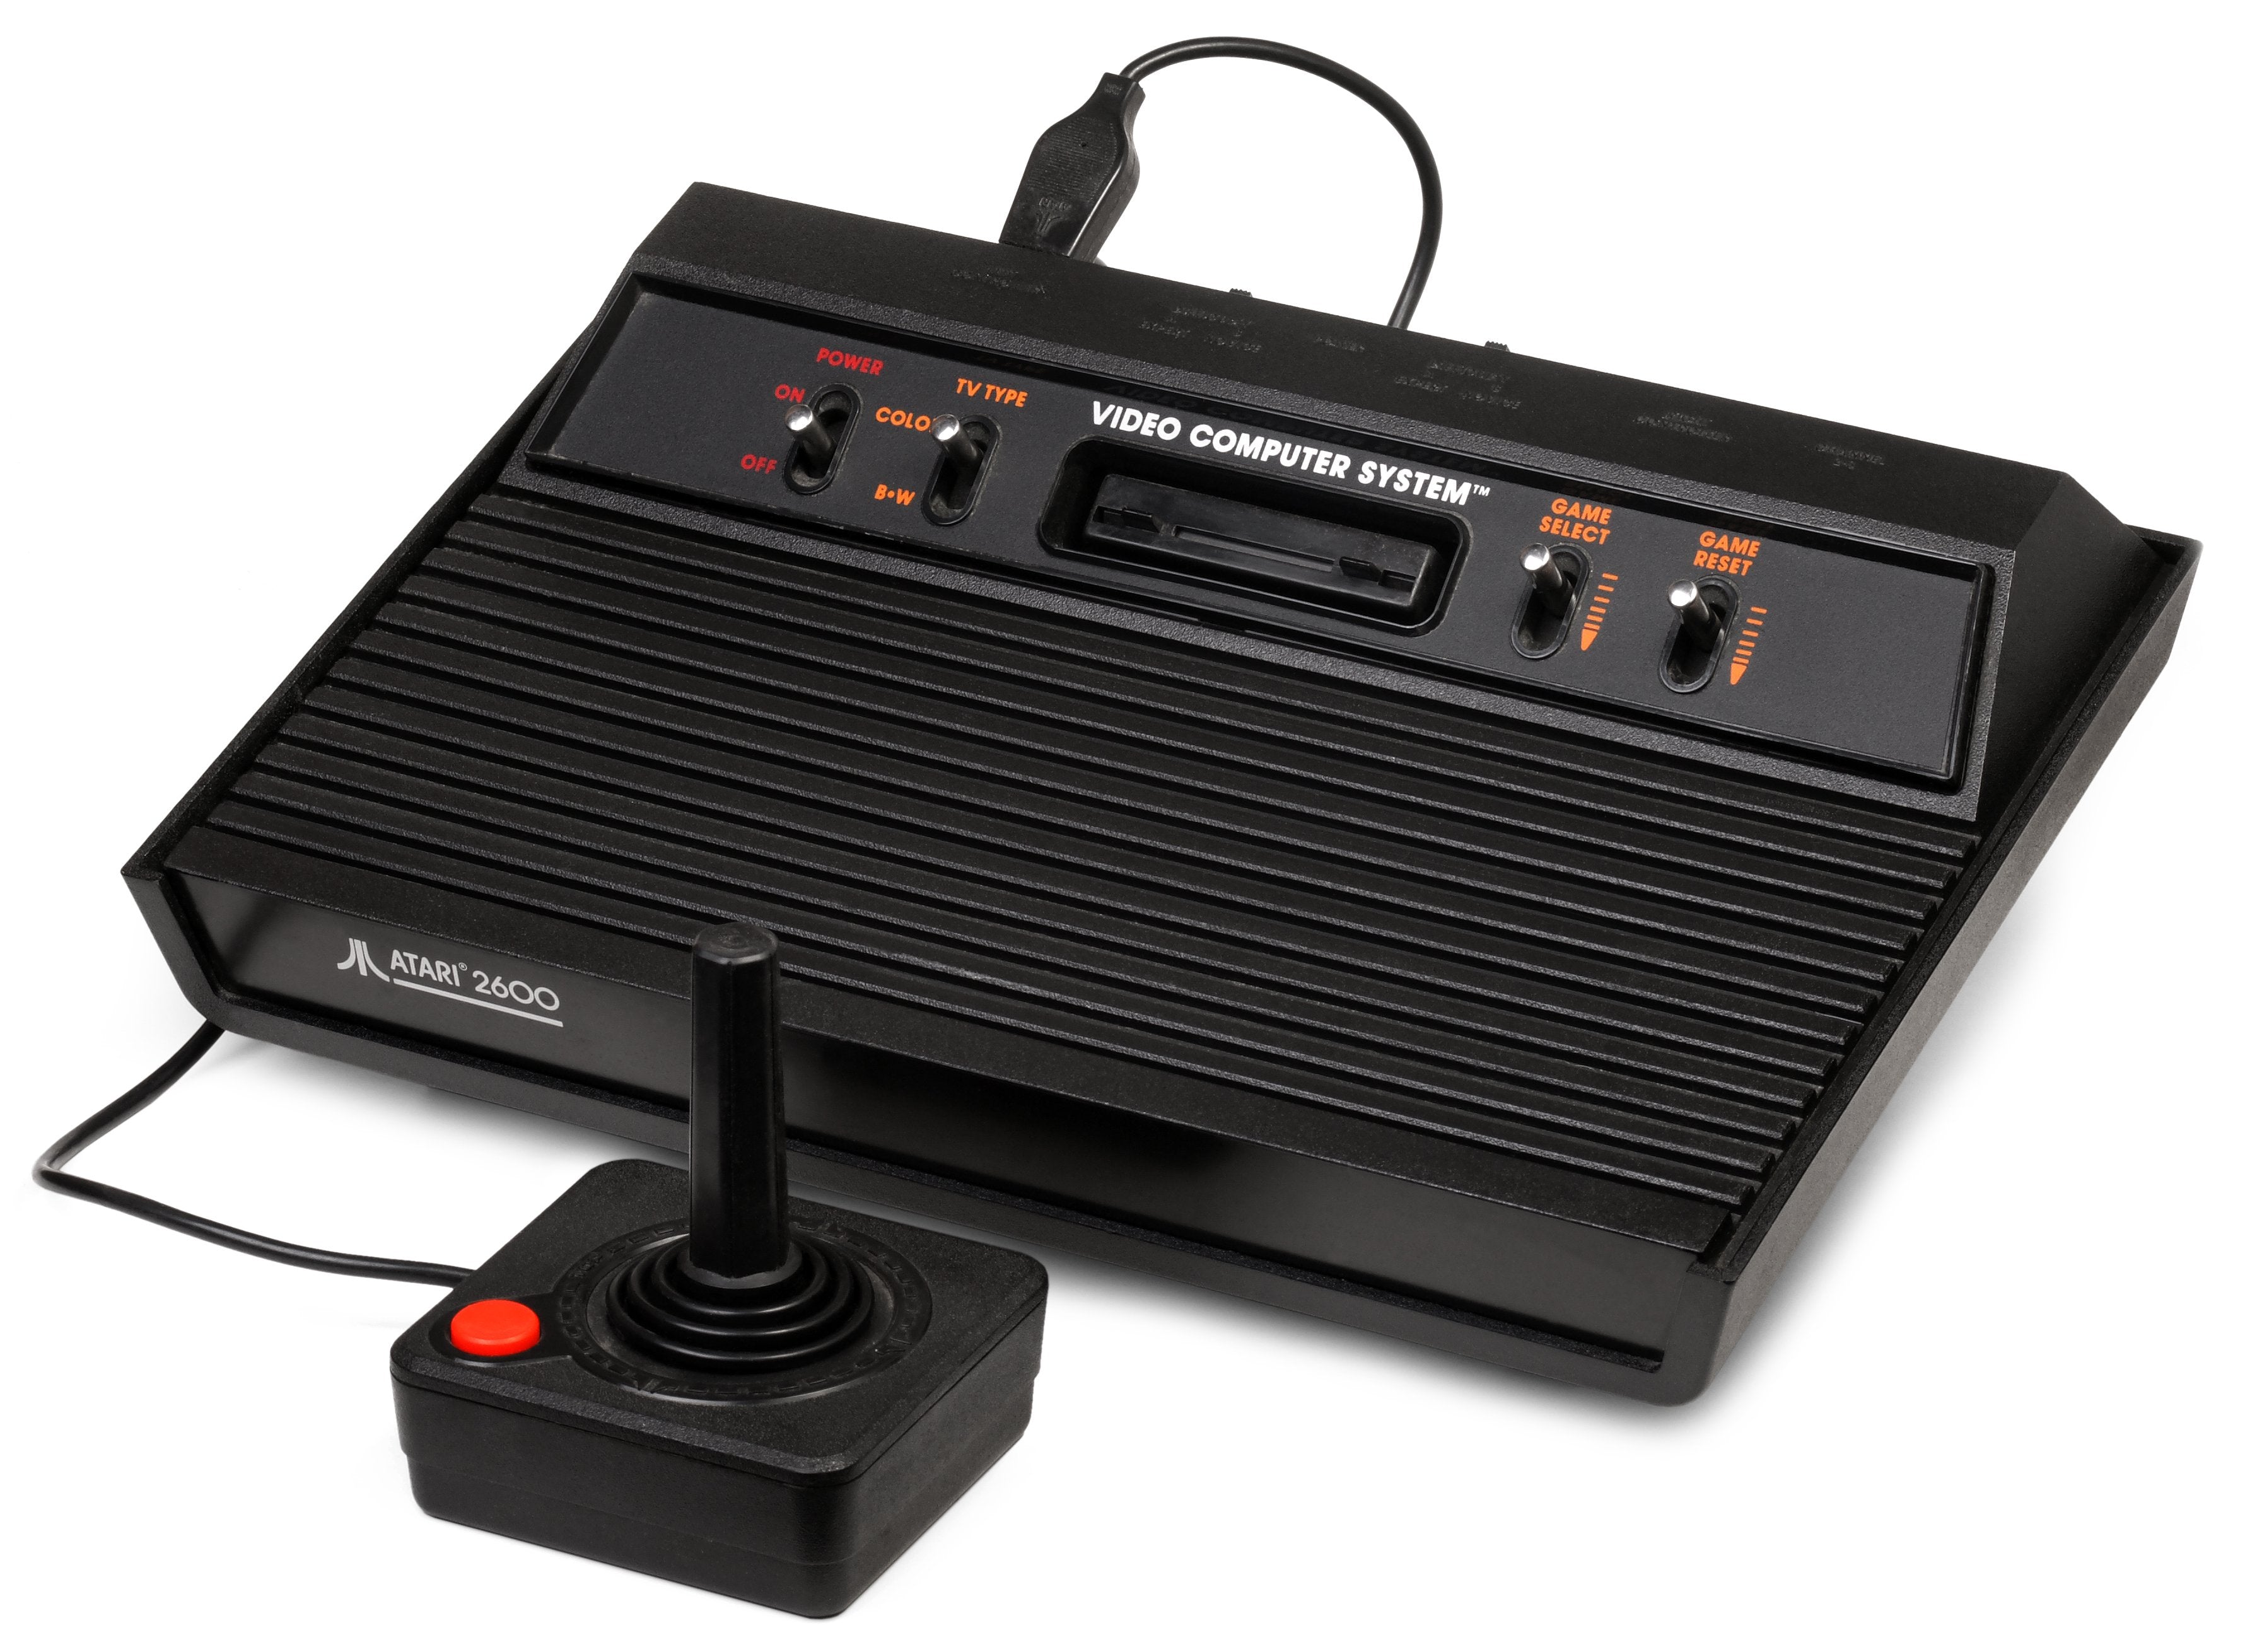 Приставка Атари 2600. Игровая консоль Atari 2600. Приставка Атари 2600 игры. Первые игровые консоли Atari 2600. Selector игровые